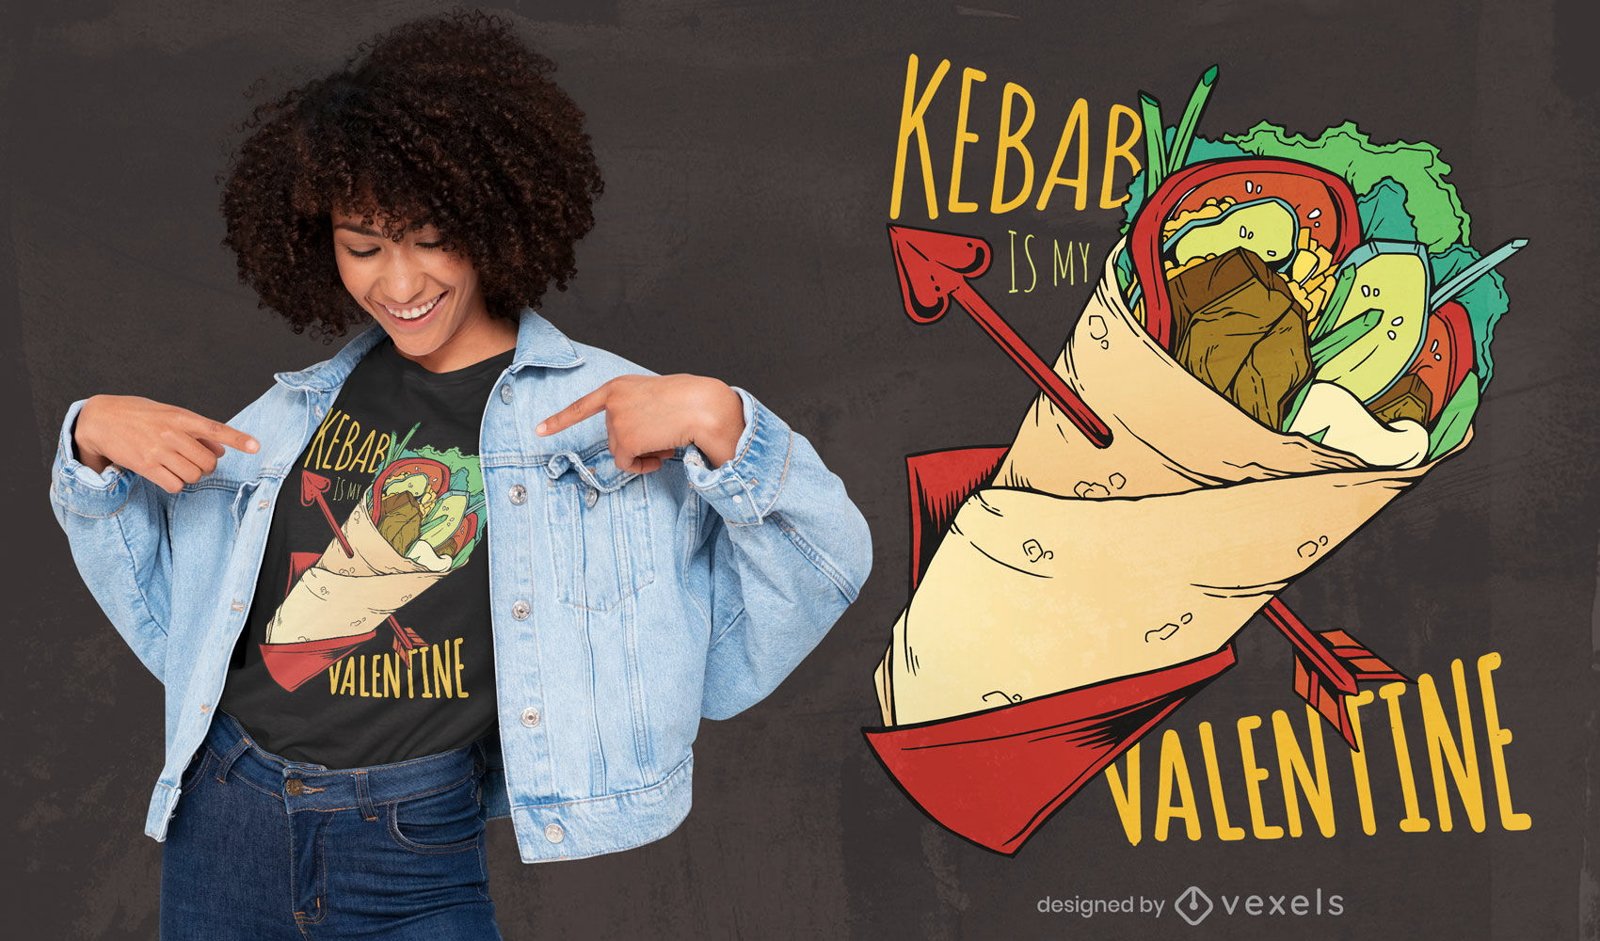 Kebab es mi dise?o de camiseta de San Valent?n